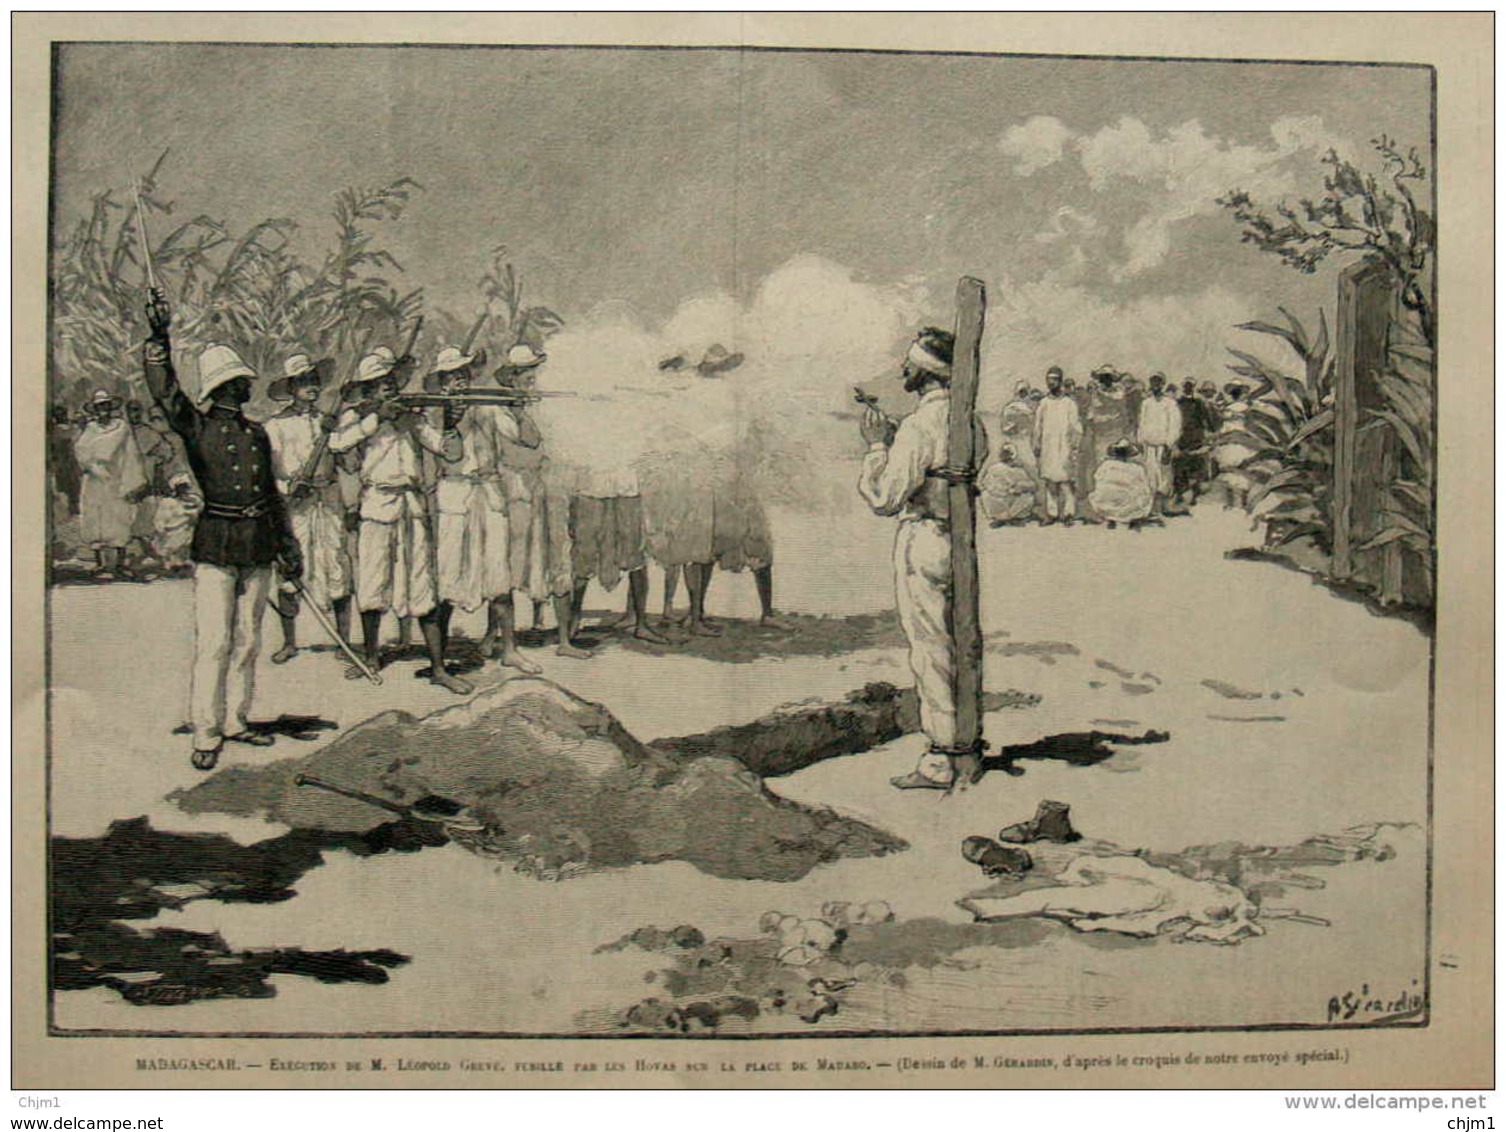 Madagascar - Exécution De M. Leopold Greve, Fusillé Par Les Hovas Sur Le Place De Mahabo - Page Original 1895 - Documentos Históricos